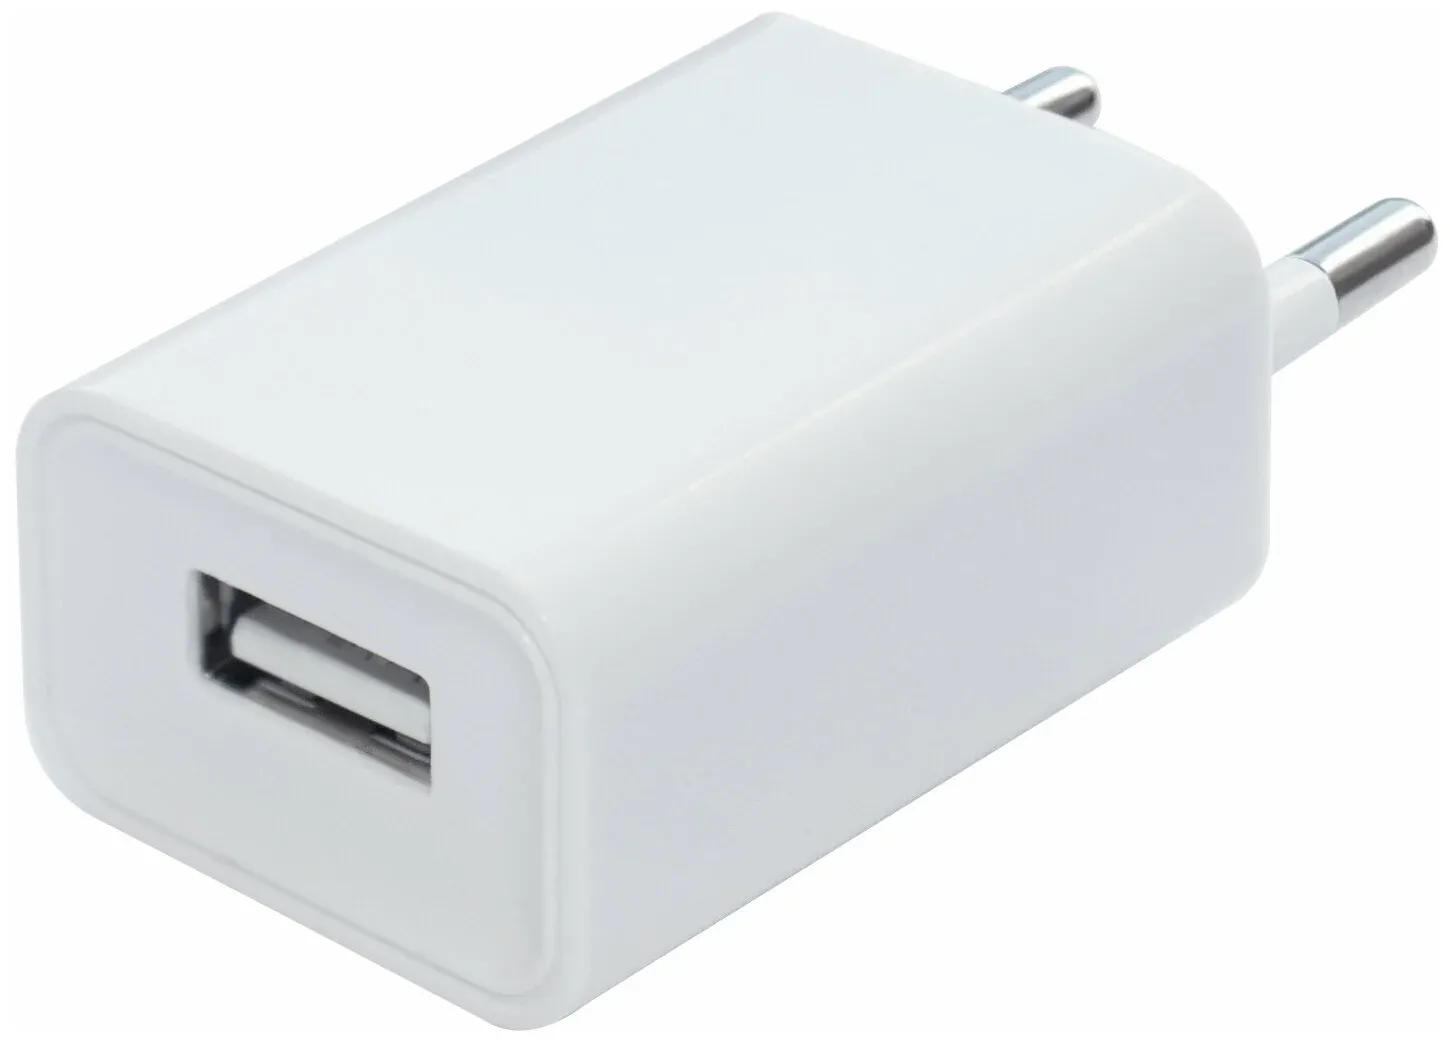 Сетевой адаптер питания GAL UC-0139 зарядка 1A USB-порт, белый, для сенсорной сантехники Kopfgecheit